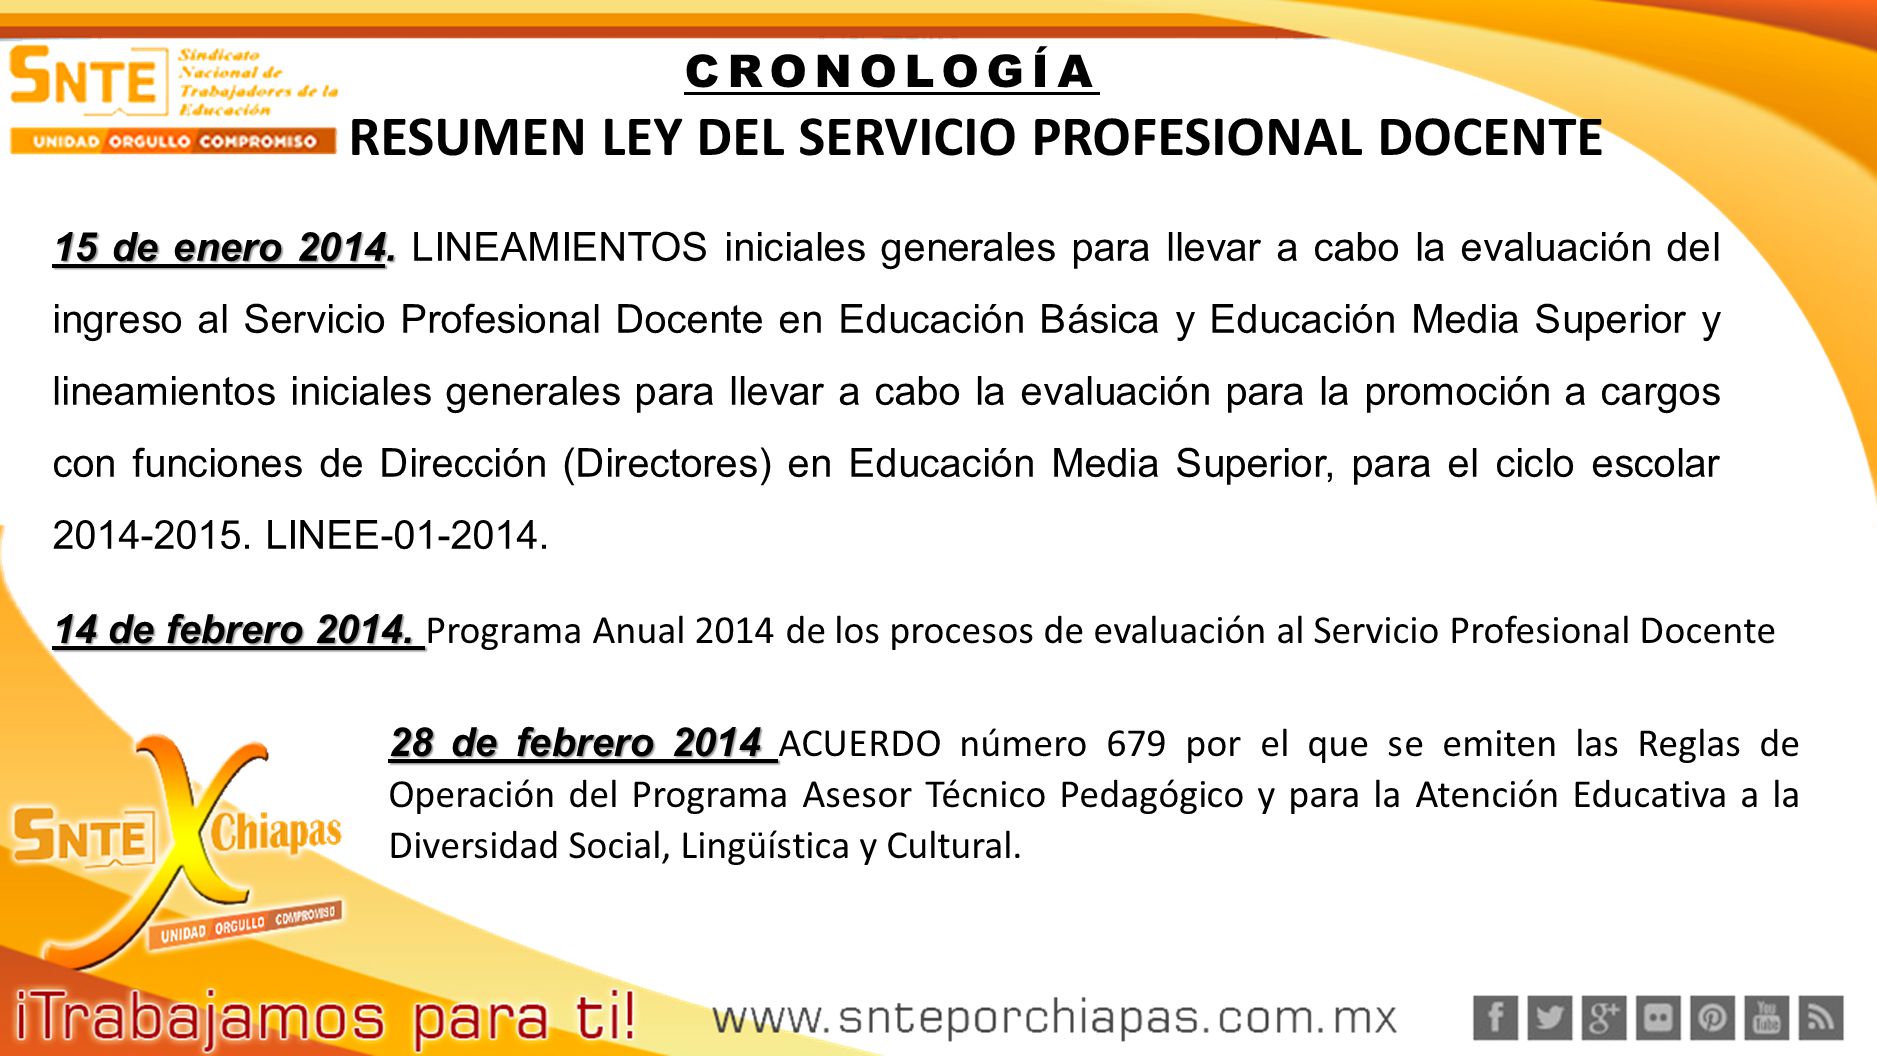 RESUMEN LEY DEL SERVICIO PROFESIONAL DOCENTE